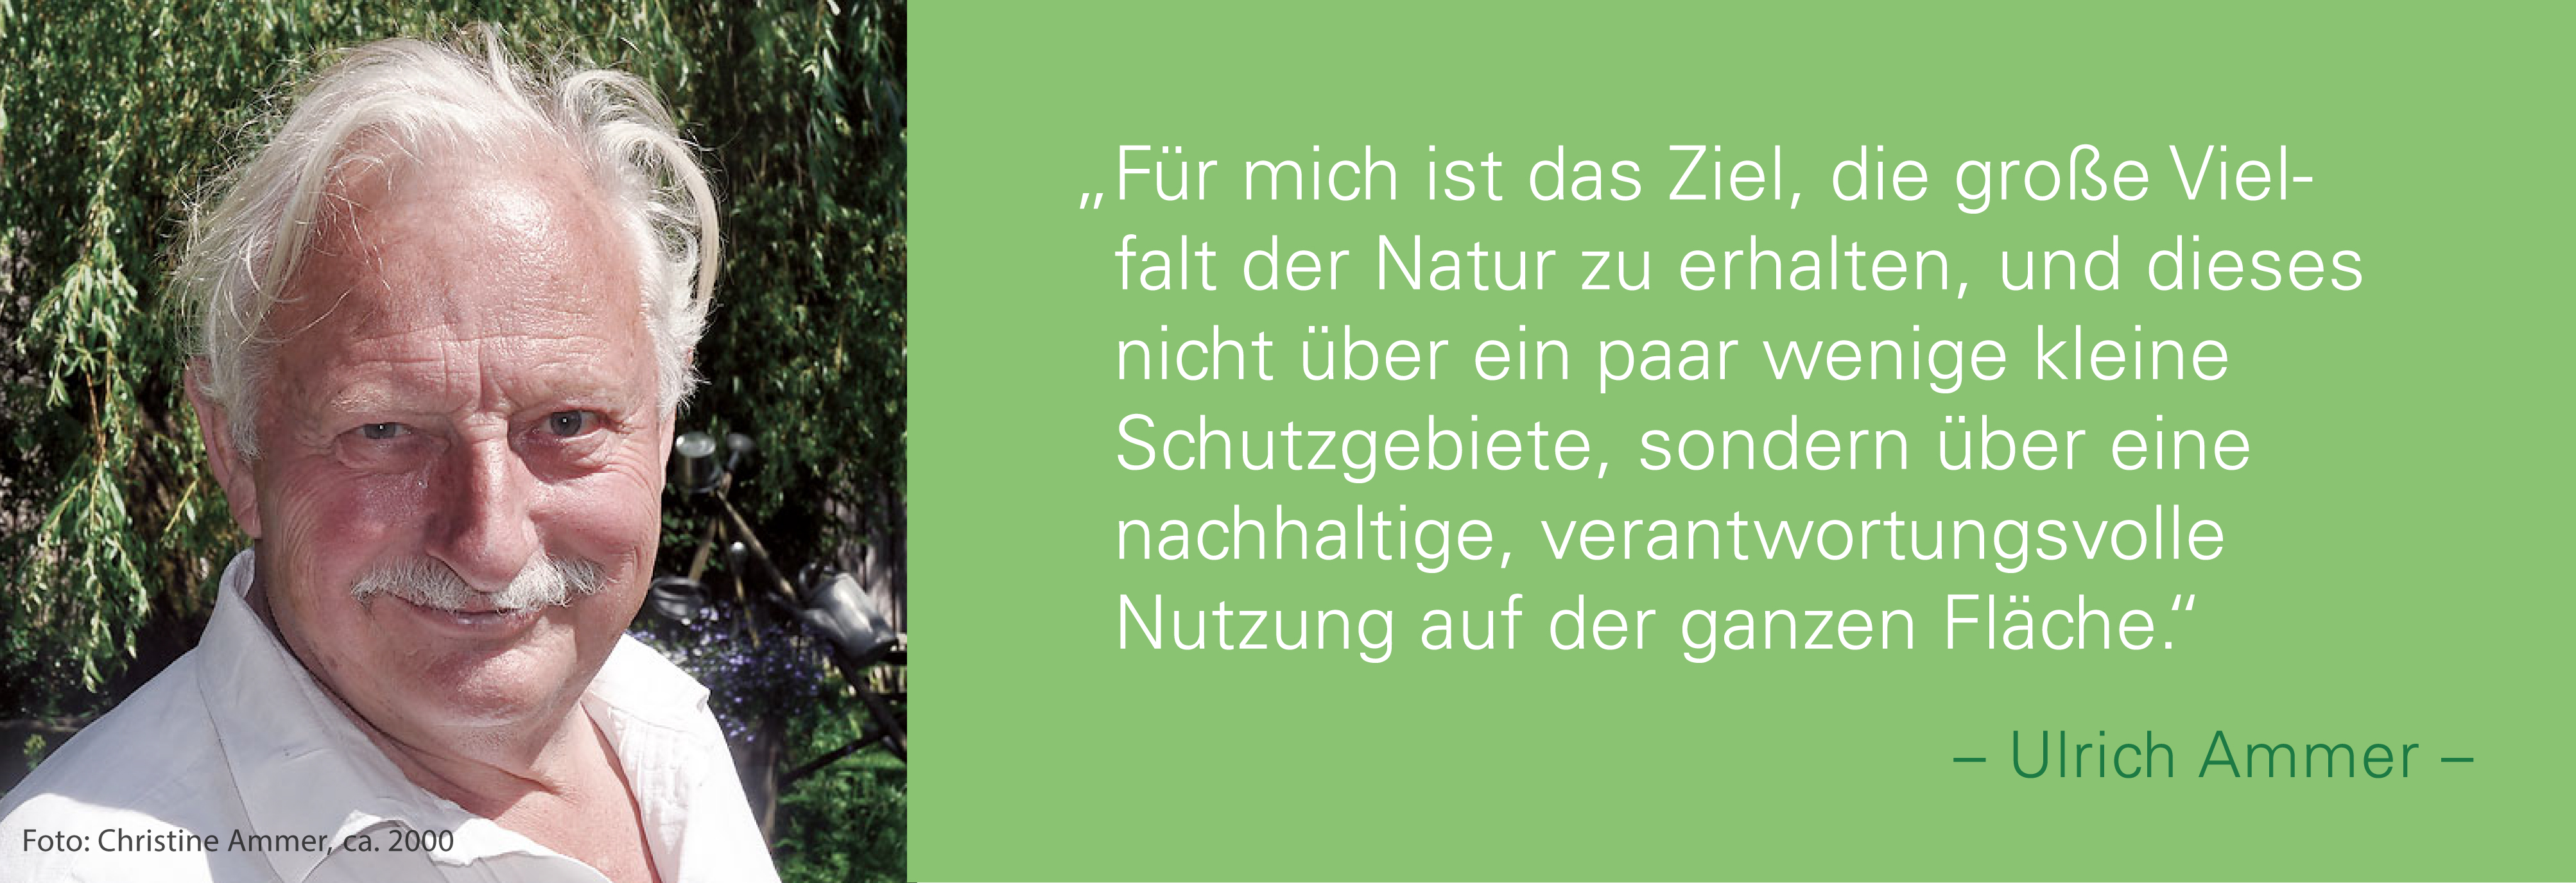 Portraitfoto von Ullrich Ammer mit seinem Zitat: Für mich ist das Ziel, die große Vielfalt der Natur zu erhalten, und dieses nicht über ein paar wenige kleine Schutzgebiete, sondern über eine nachhaltige, verantwortungsvolle Nutzung auf der ganzen Fläche.